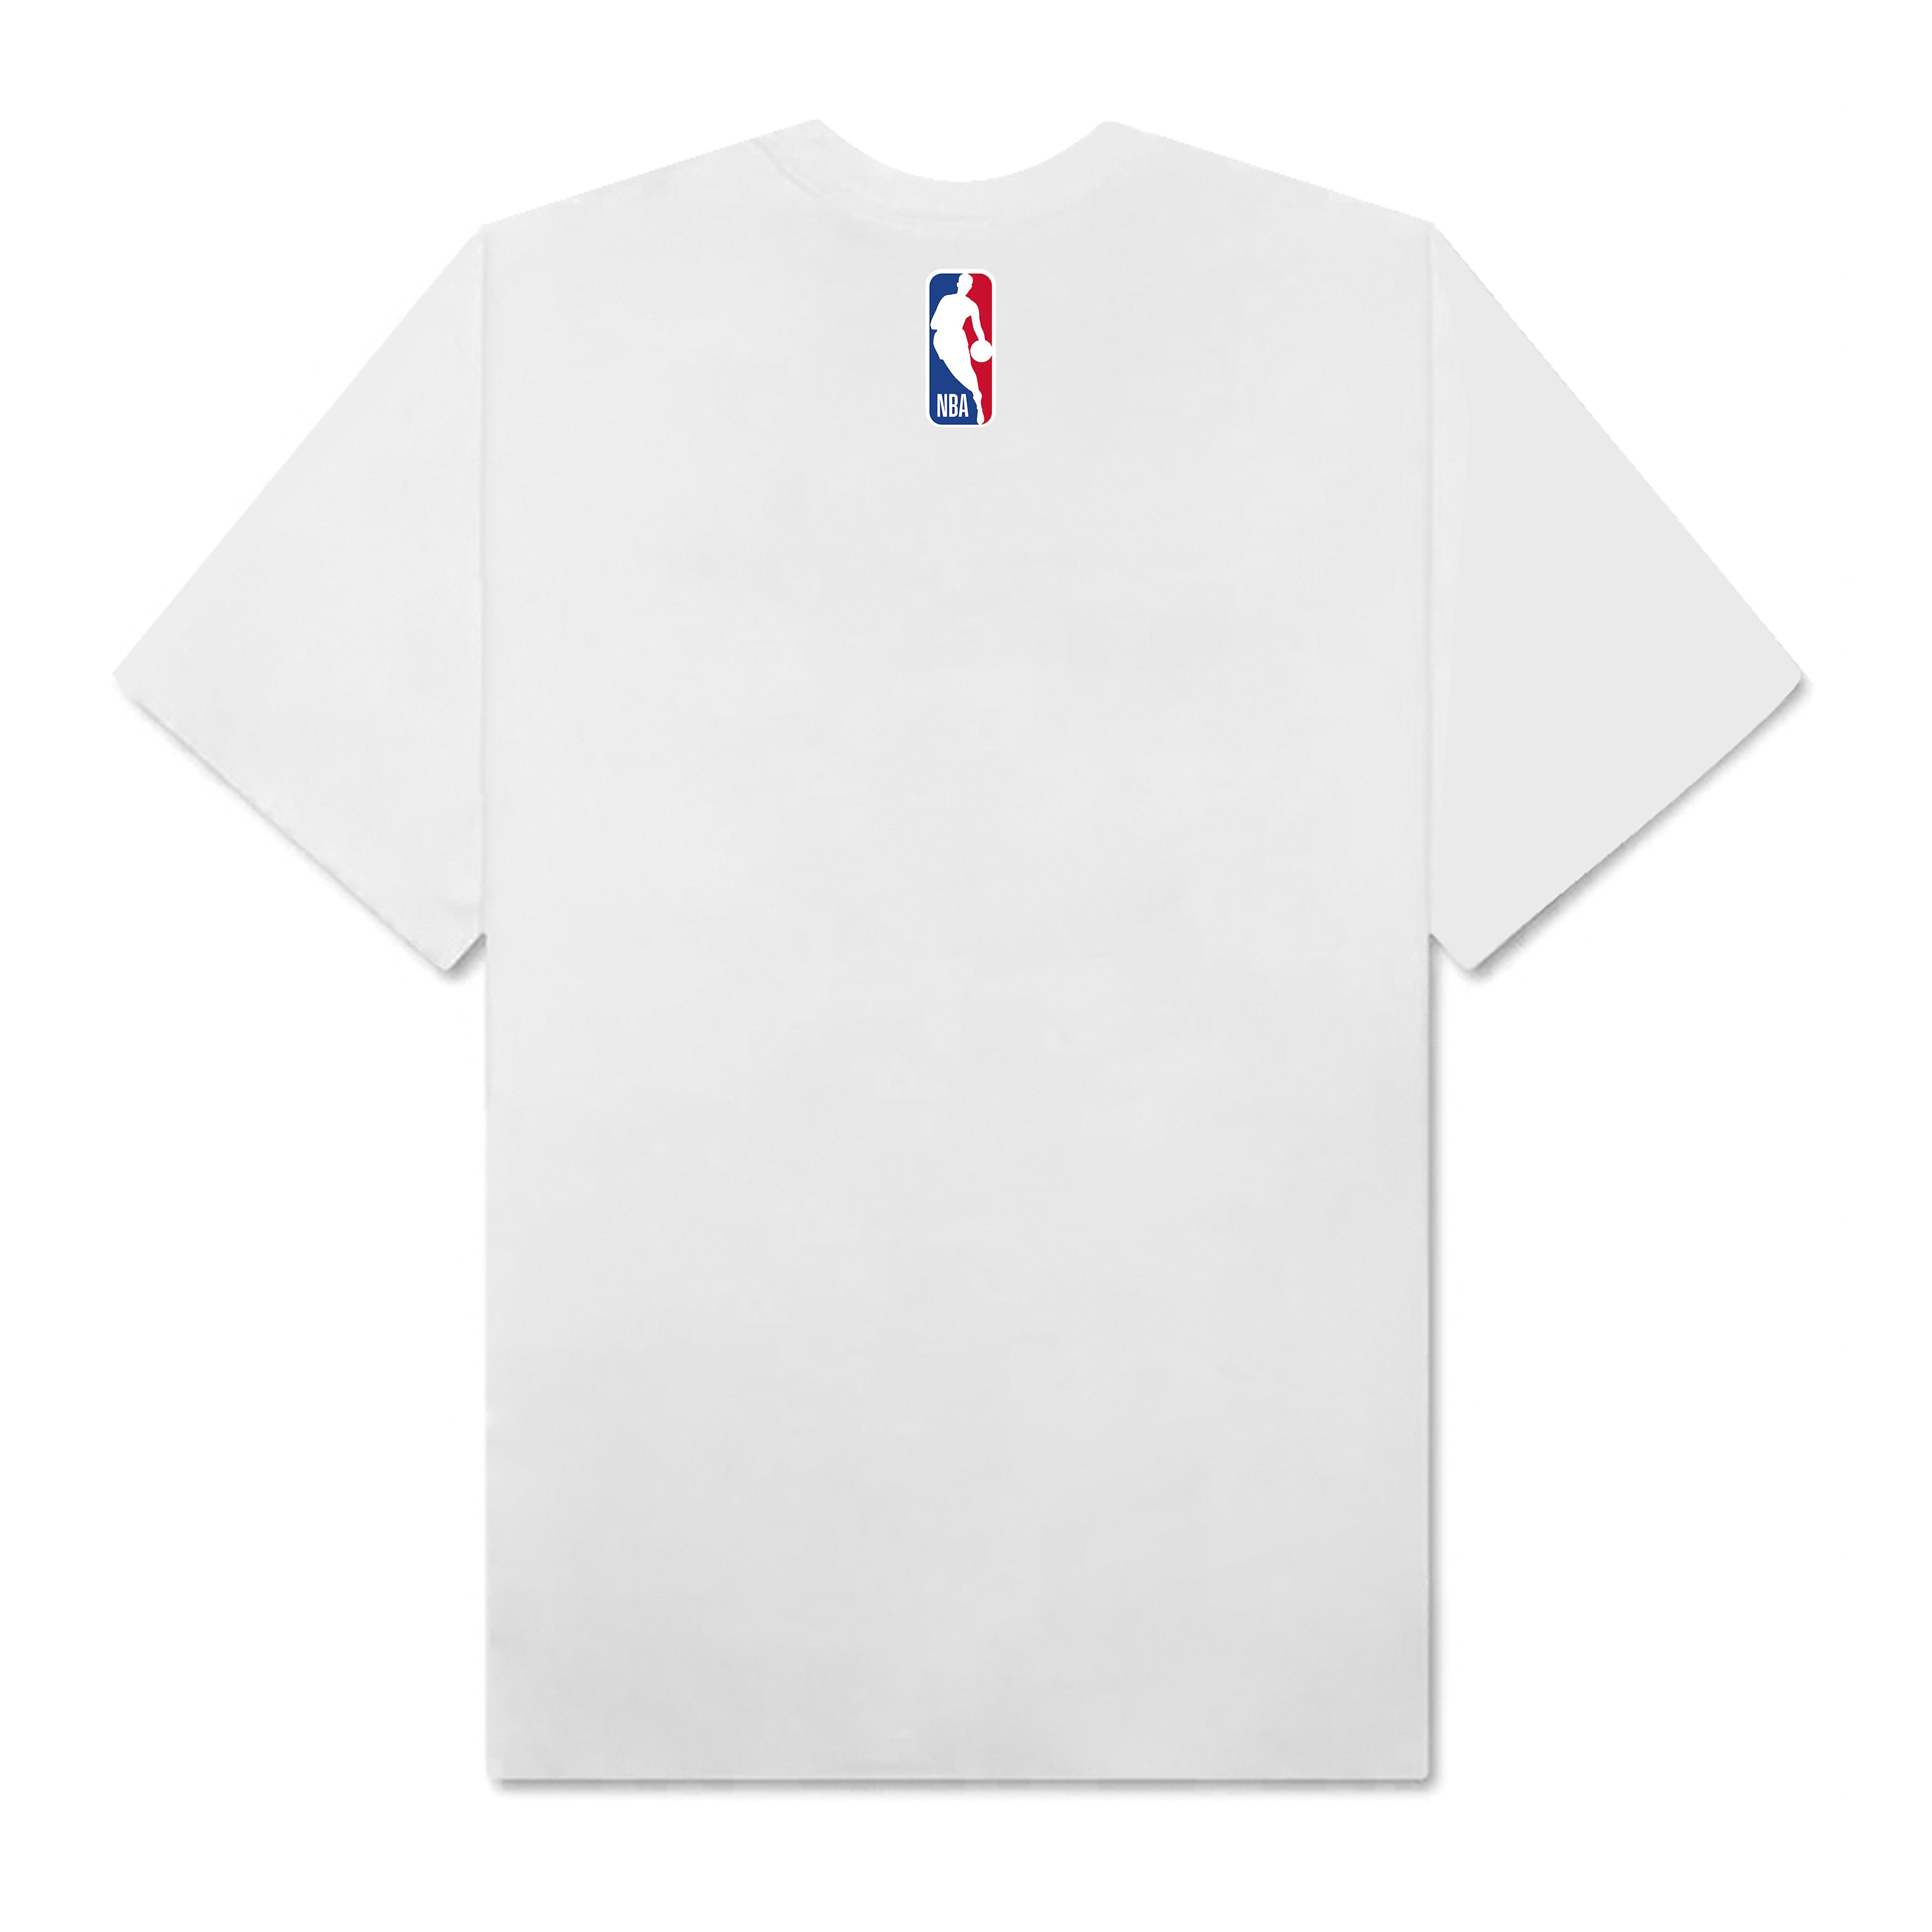 NBA Los Angeles Lakers Mickey T-Shirt